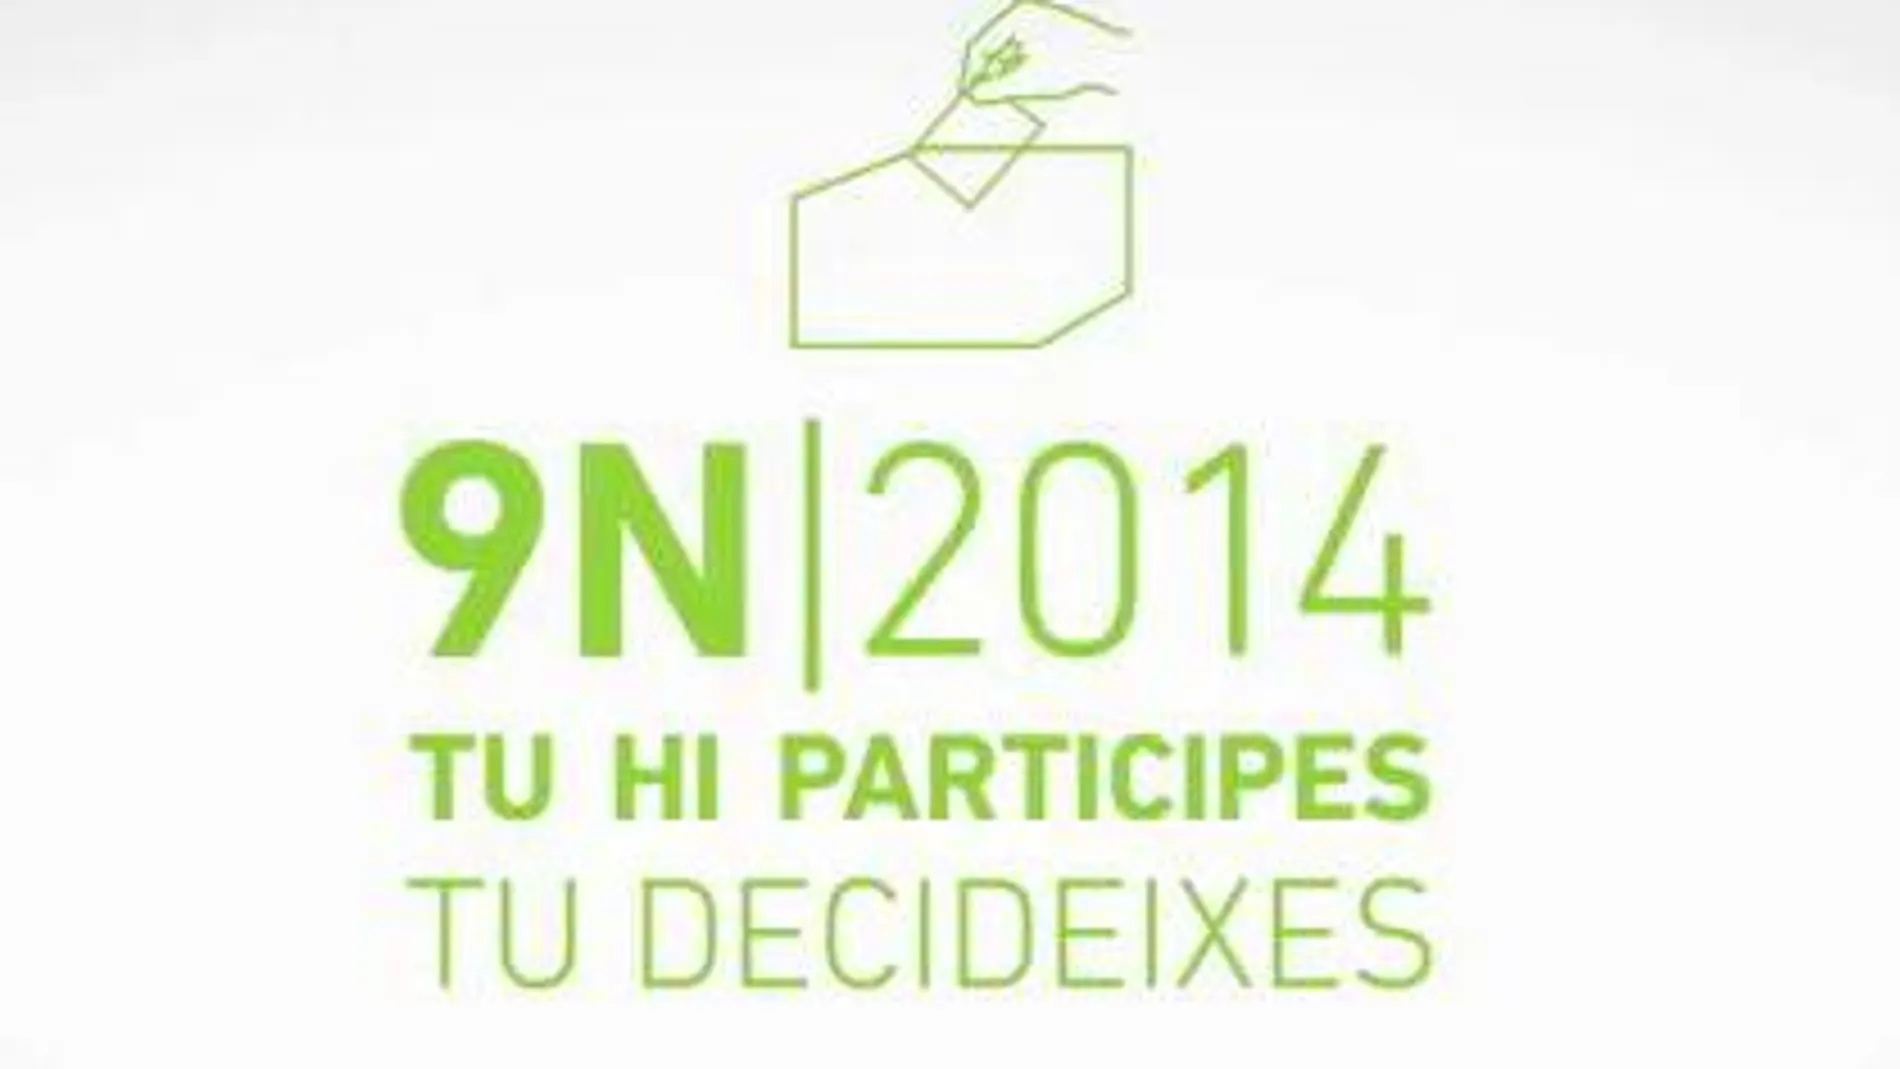 La Generalitat mantiene el vídeo de llamada al voto el 9N